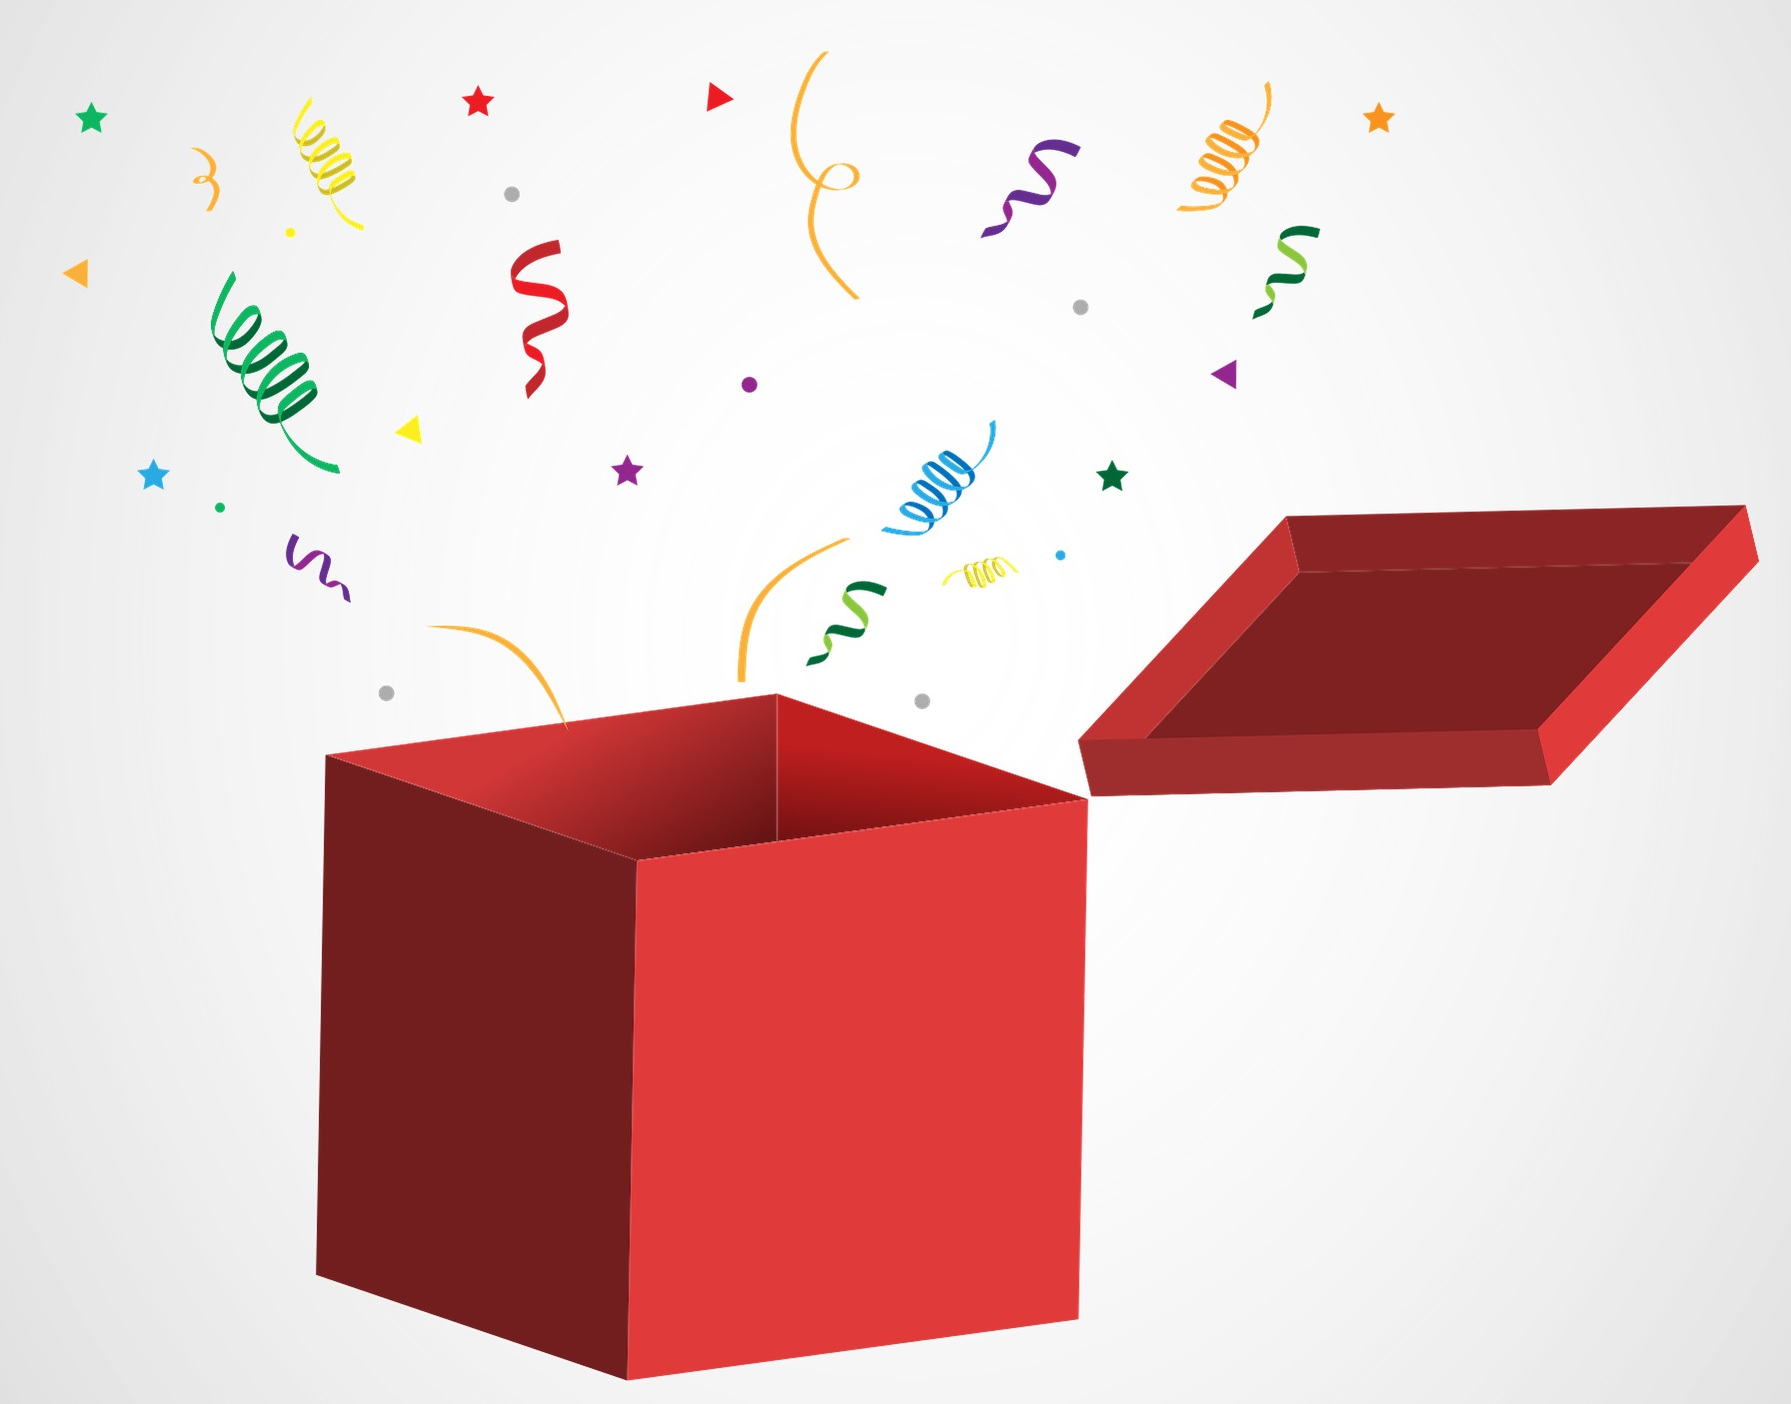 La imagen muestra una caja roja de la que salen papelitos y serpentinas de colores